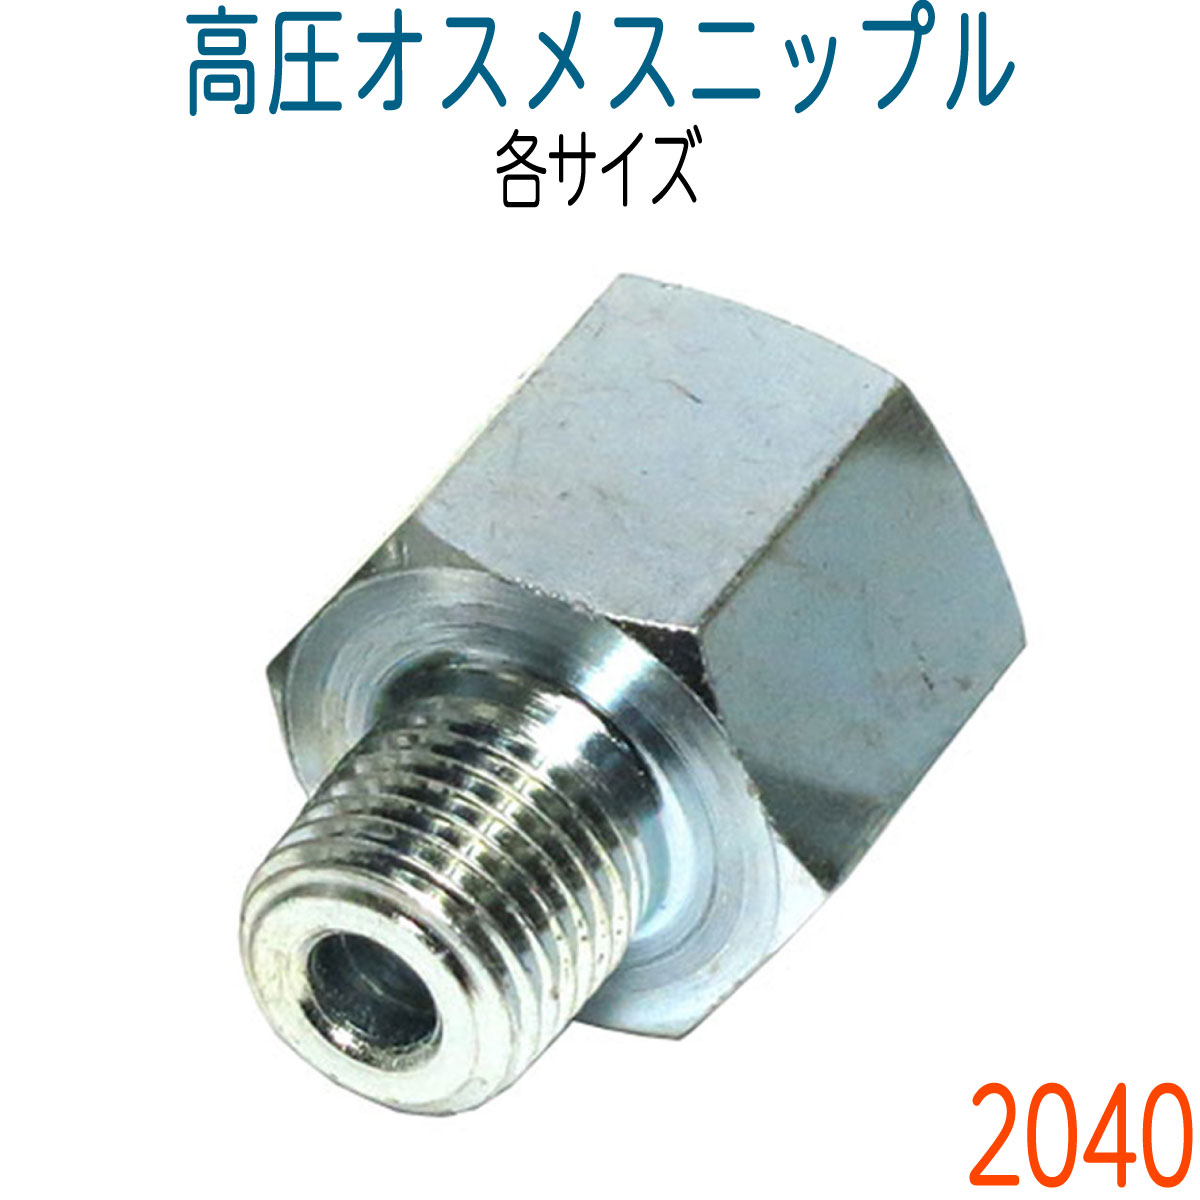 高圧継手(メス×メス 袋ナットタイプ) TS144 TS144 - 1